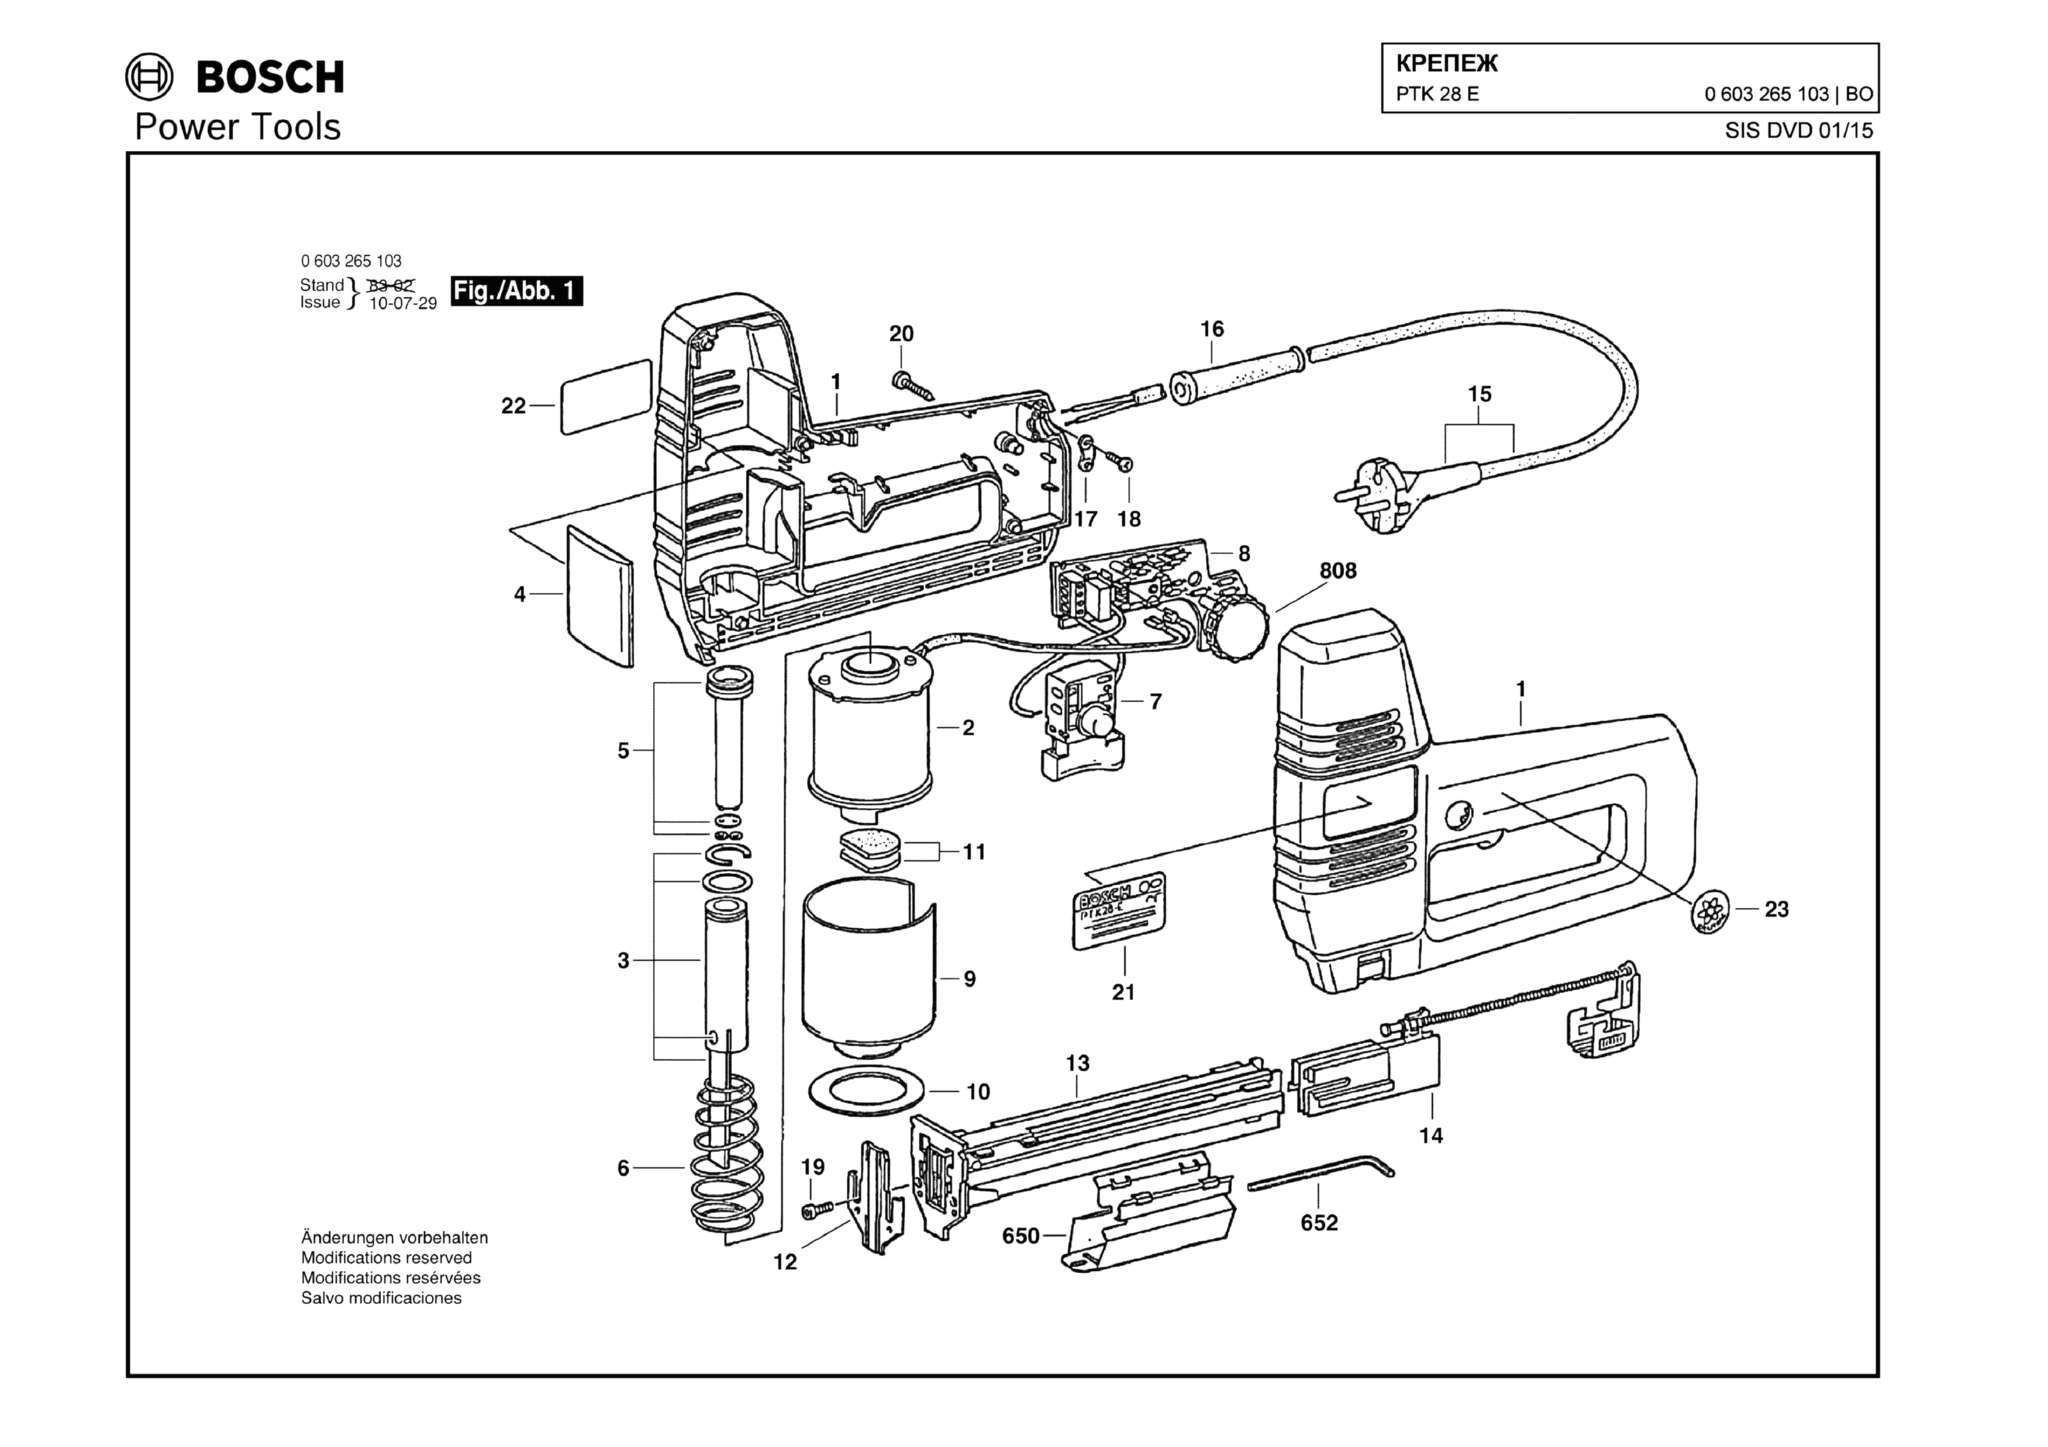 Запчасти, схема и деталировка Bosch PTK 28 E (ТИП 0603265103)